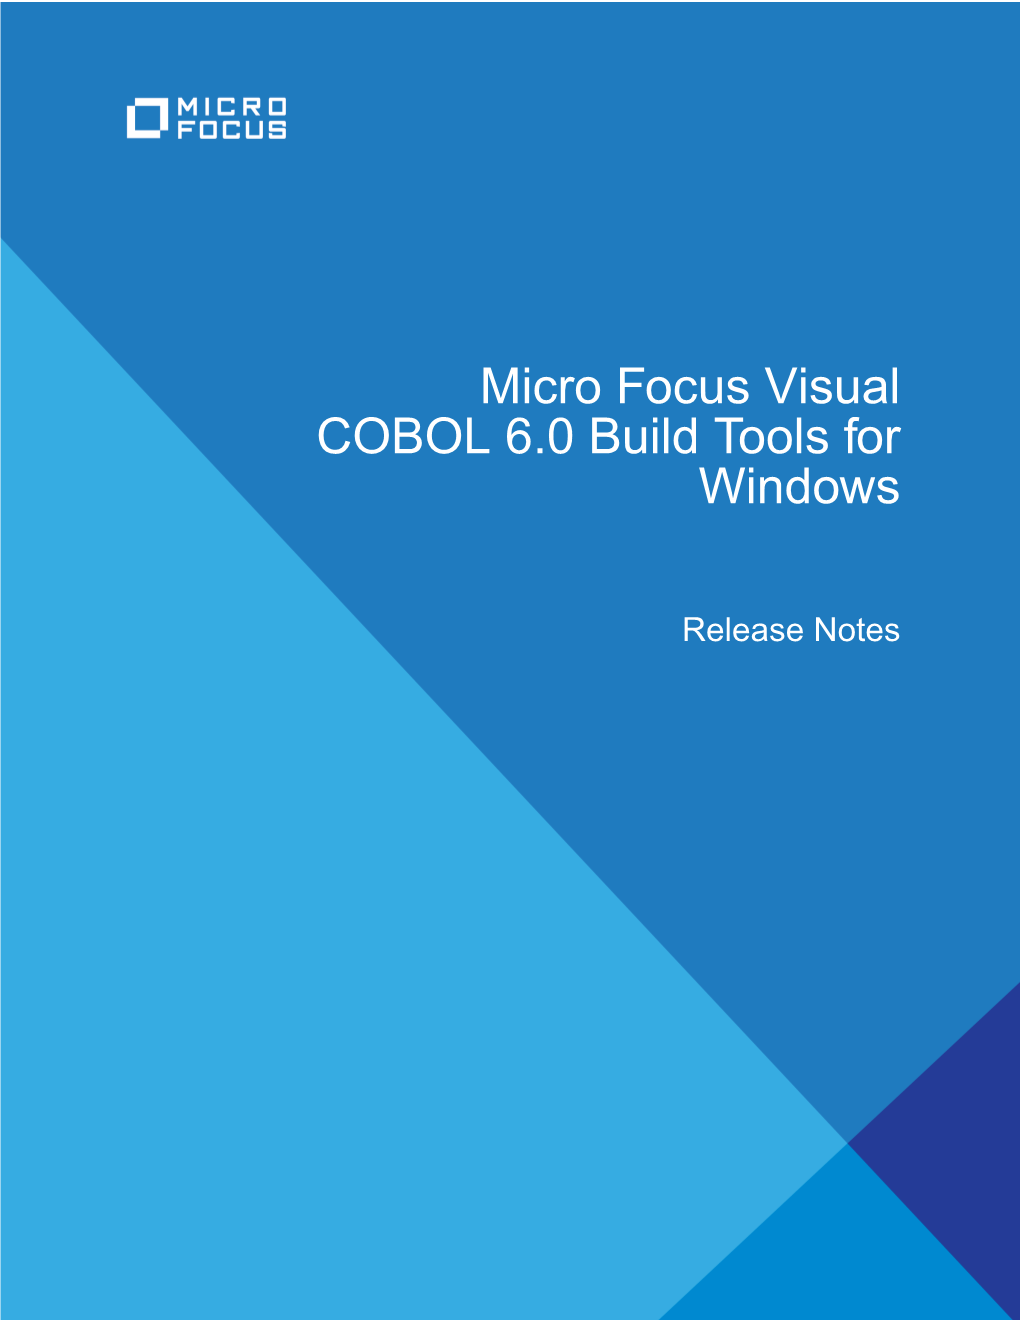 Micro Focus Visual COBOL 6.0 Build Tools for Windows